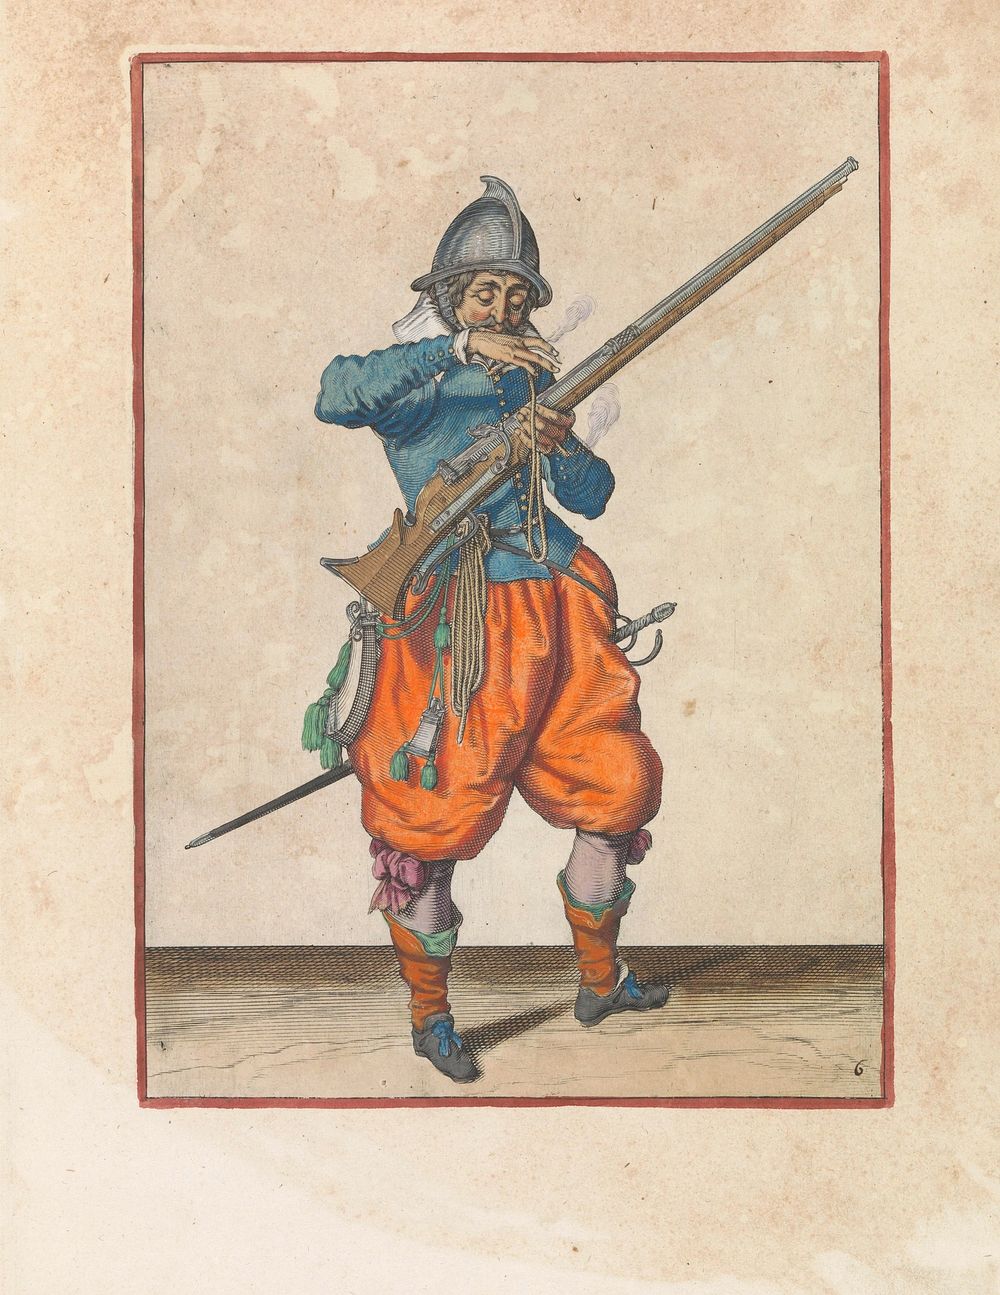 Soldaat met een roer die zijn lont naar zijn mond brengt om hem schoon te blazen (c. 1597 - 1607) by Jacques de Gheyn II and…